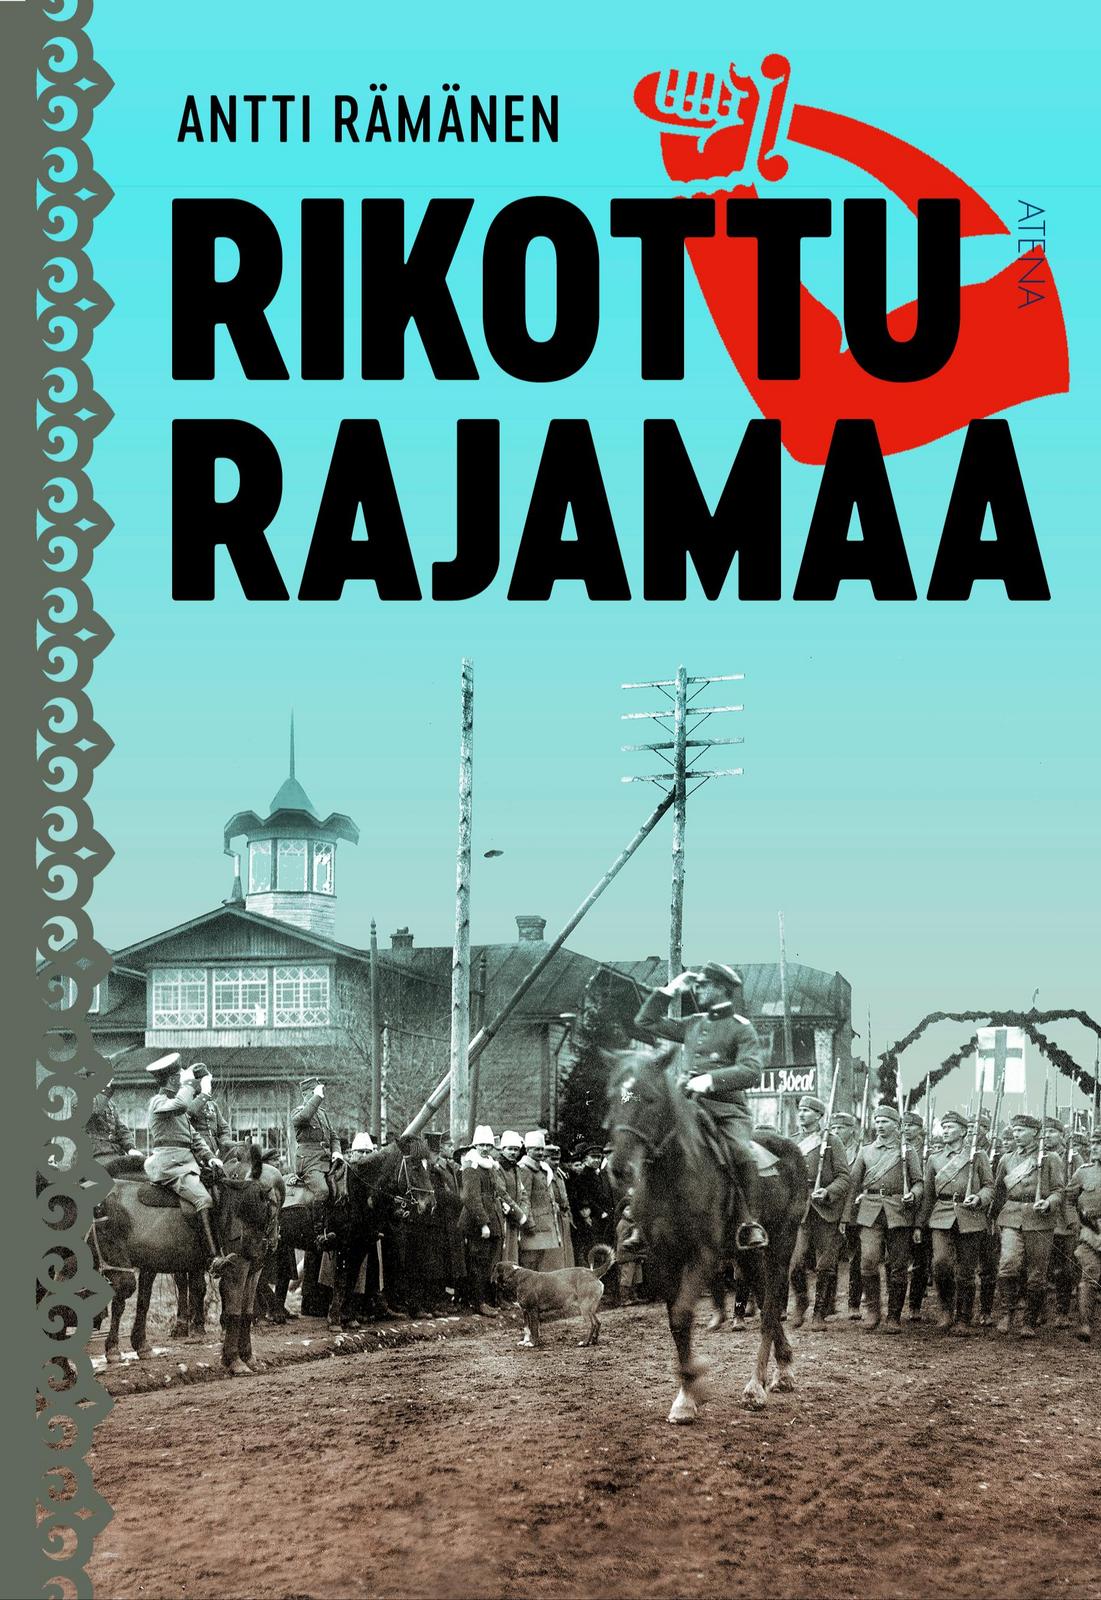 Antti Rämänen: Rikottu rajamaa (Finnish language, Atena Kustannus)